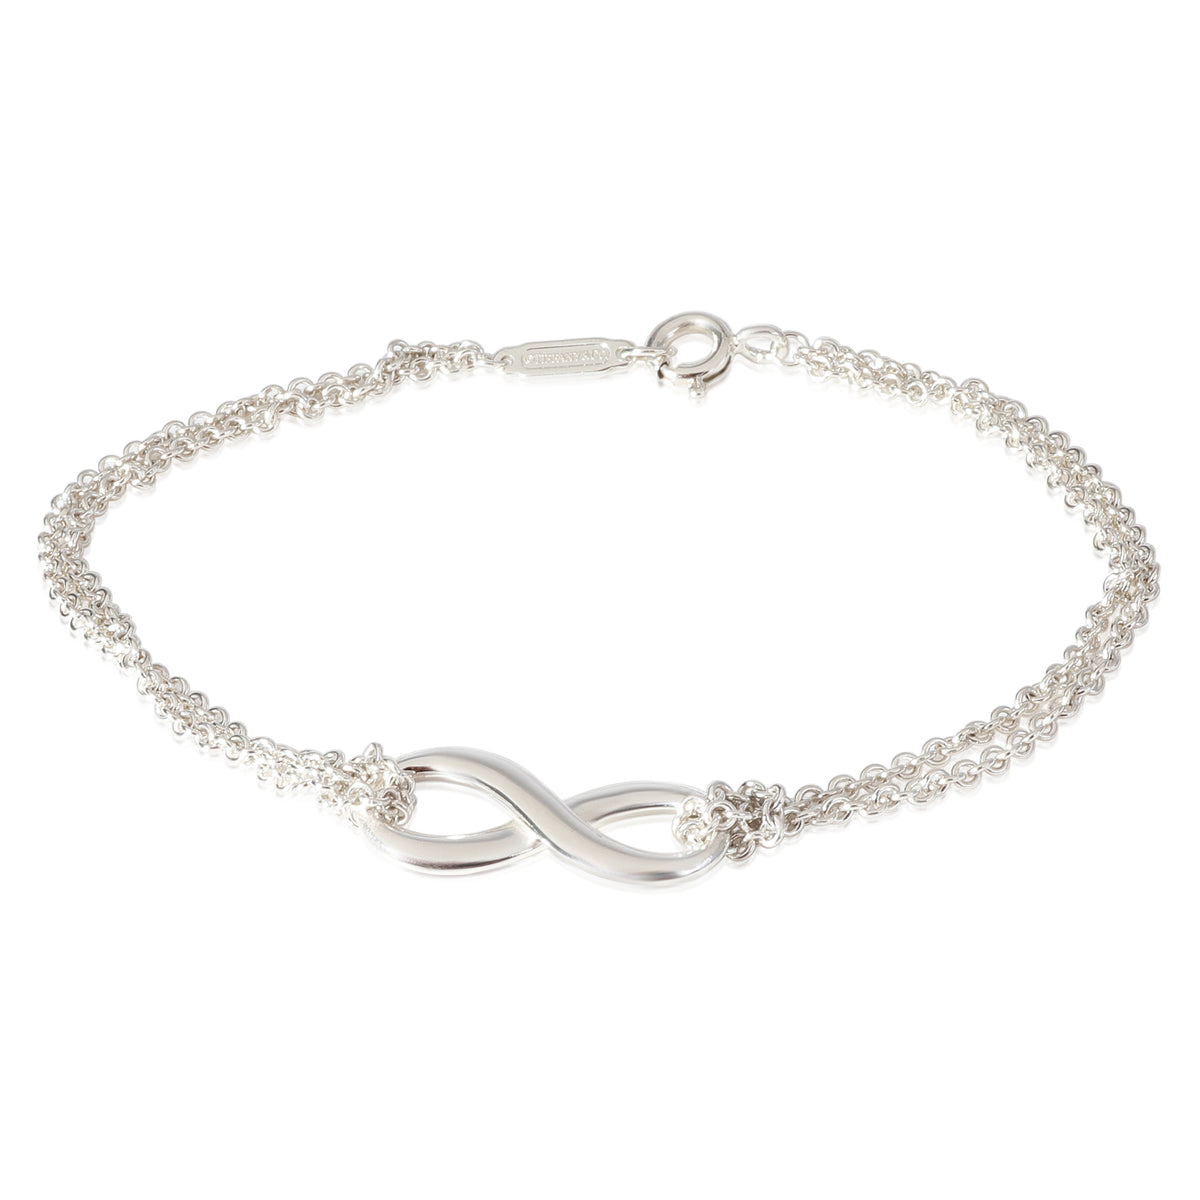 Tiffany & Co. Infinity Bracelet in Sterling Silver